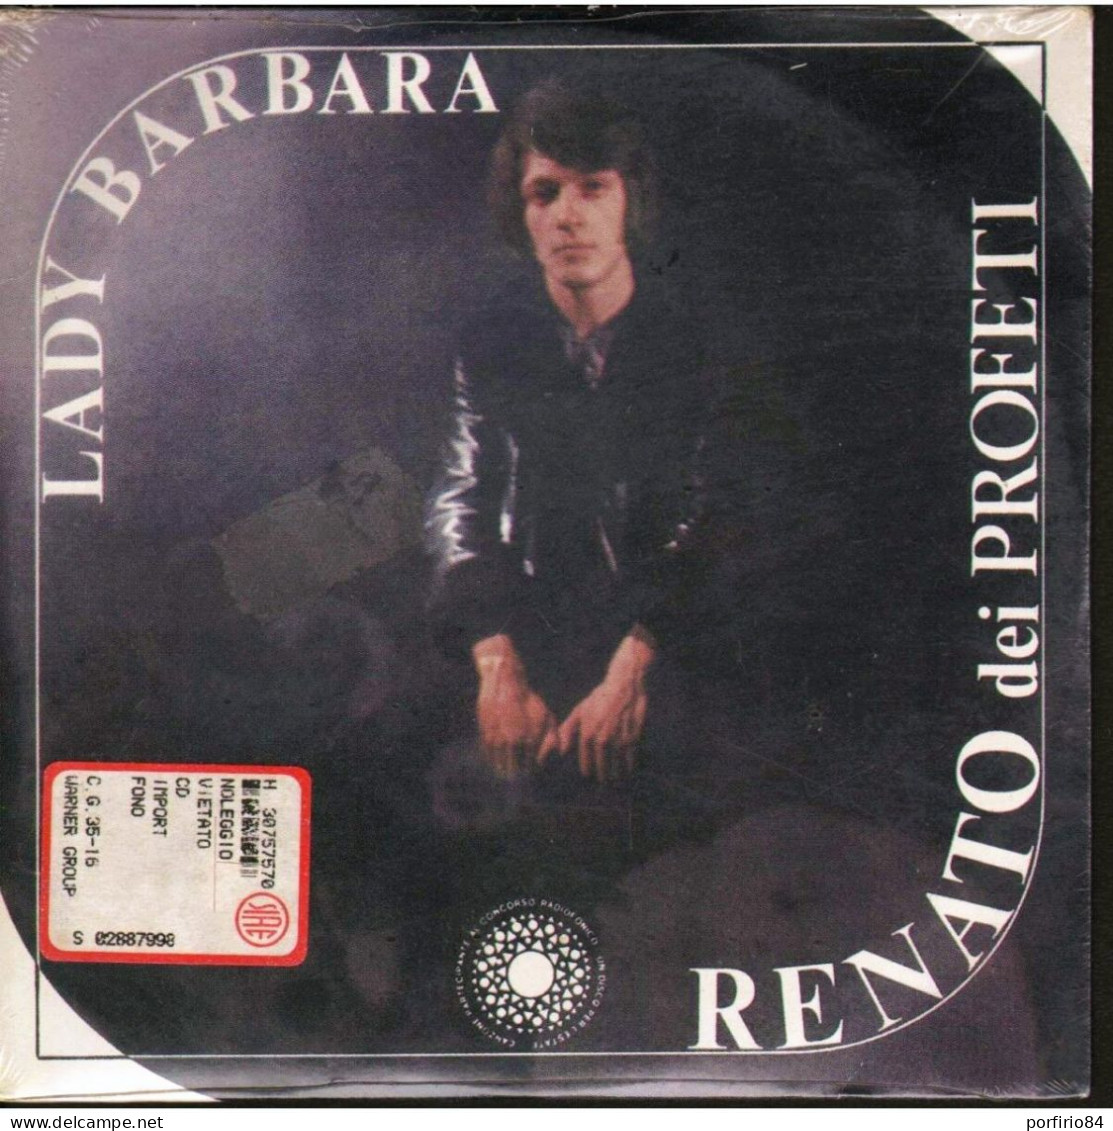 RENATO Dei PROFETI CD LADY BARBARA - RUBACUORI 1987 - SIGILLATO DA COLLEZIONE - Other - Italian Music